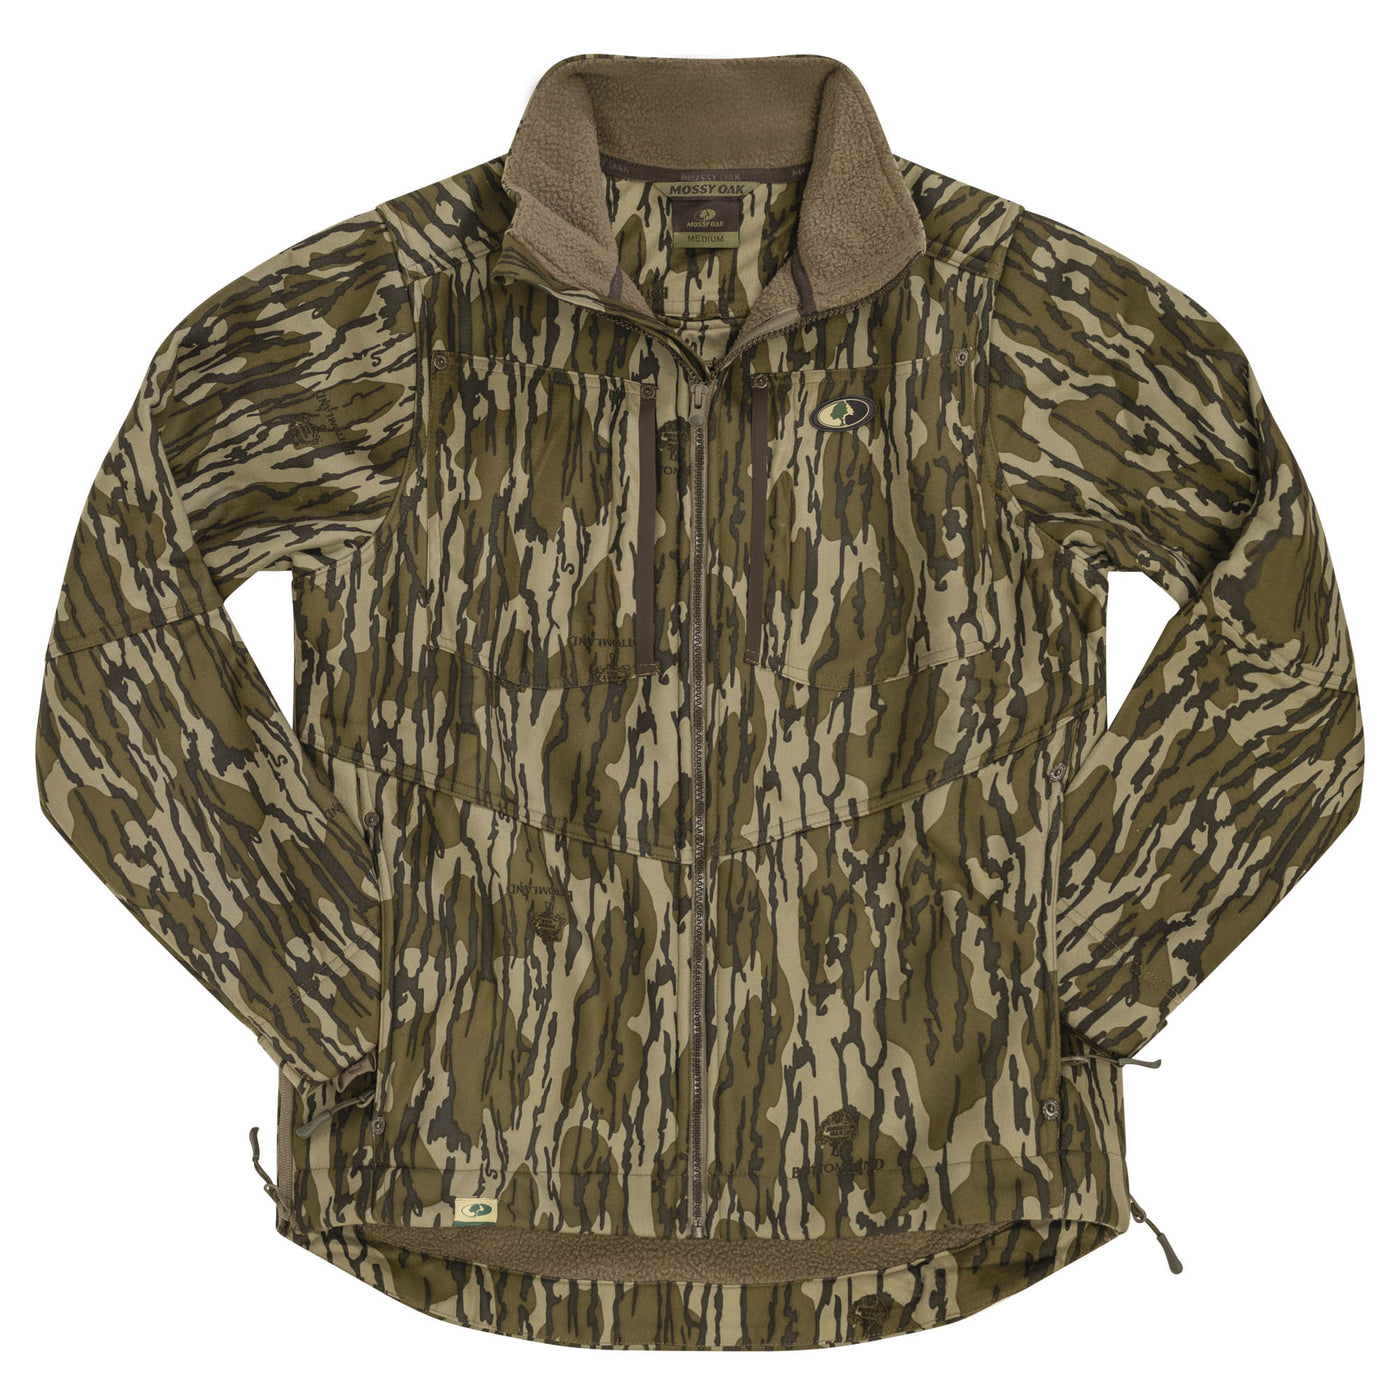 Mossy Oak Sherpa 2.0 Lined Jacket